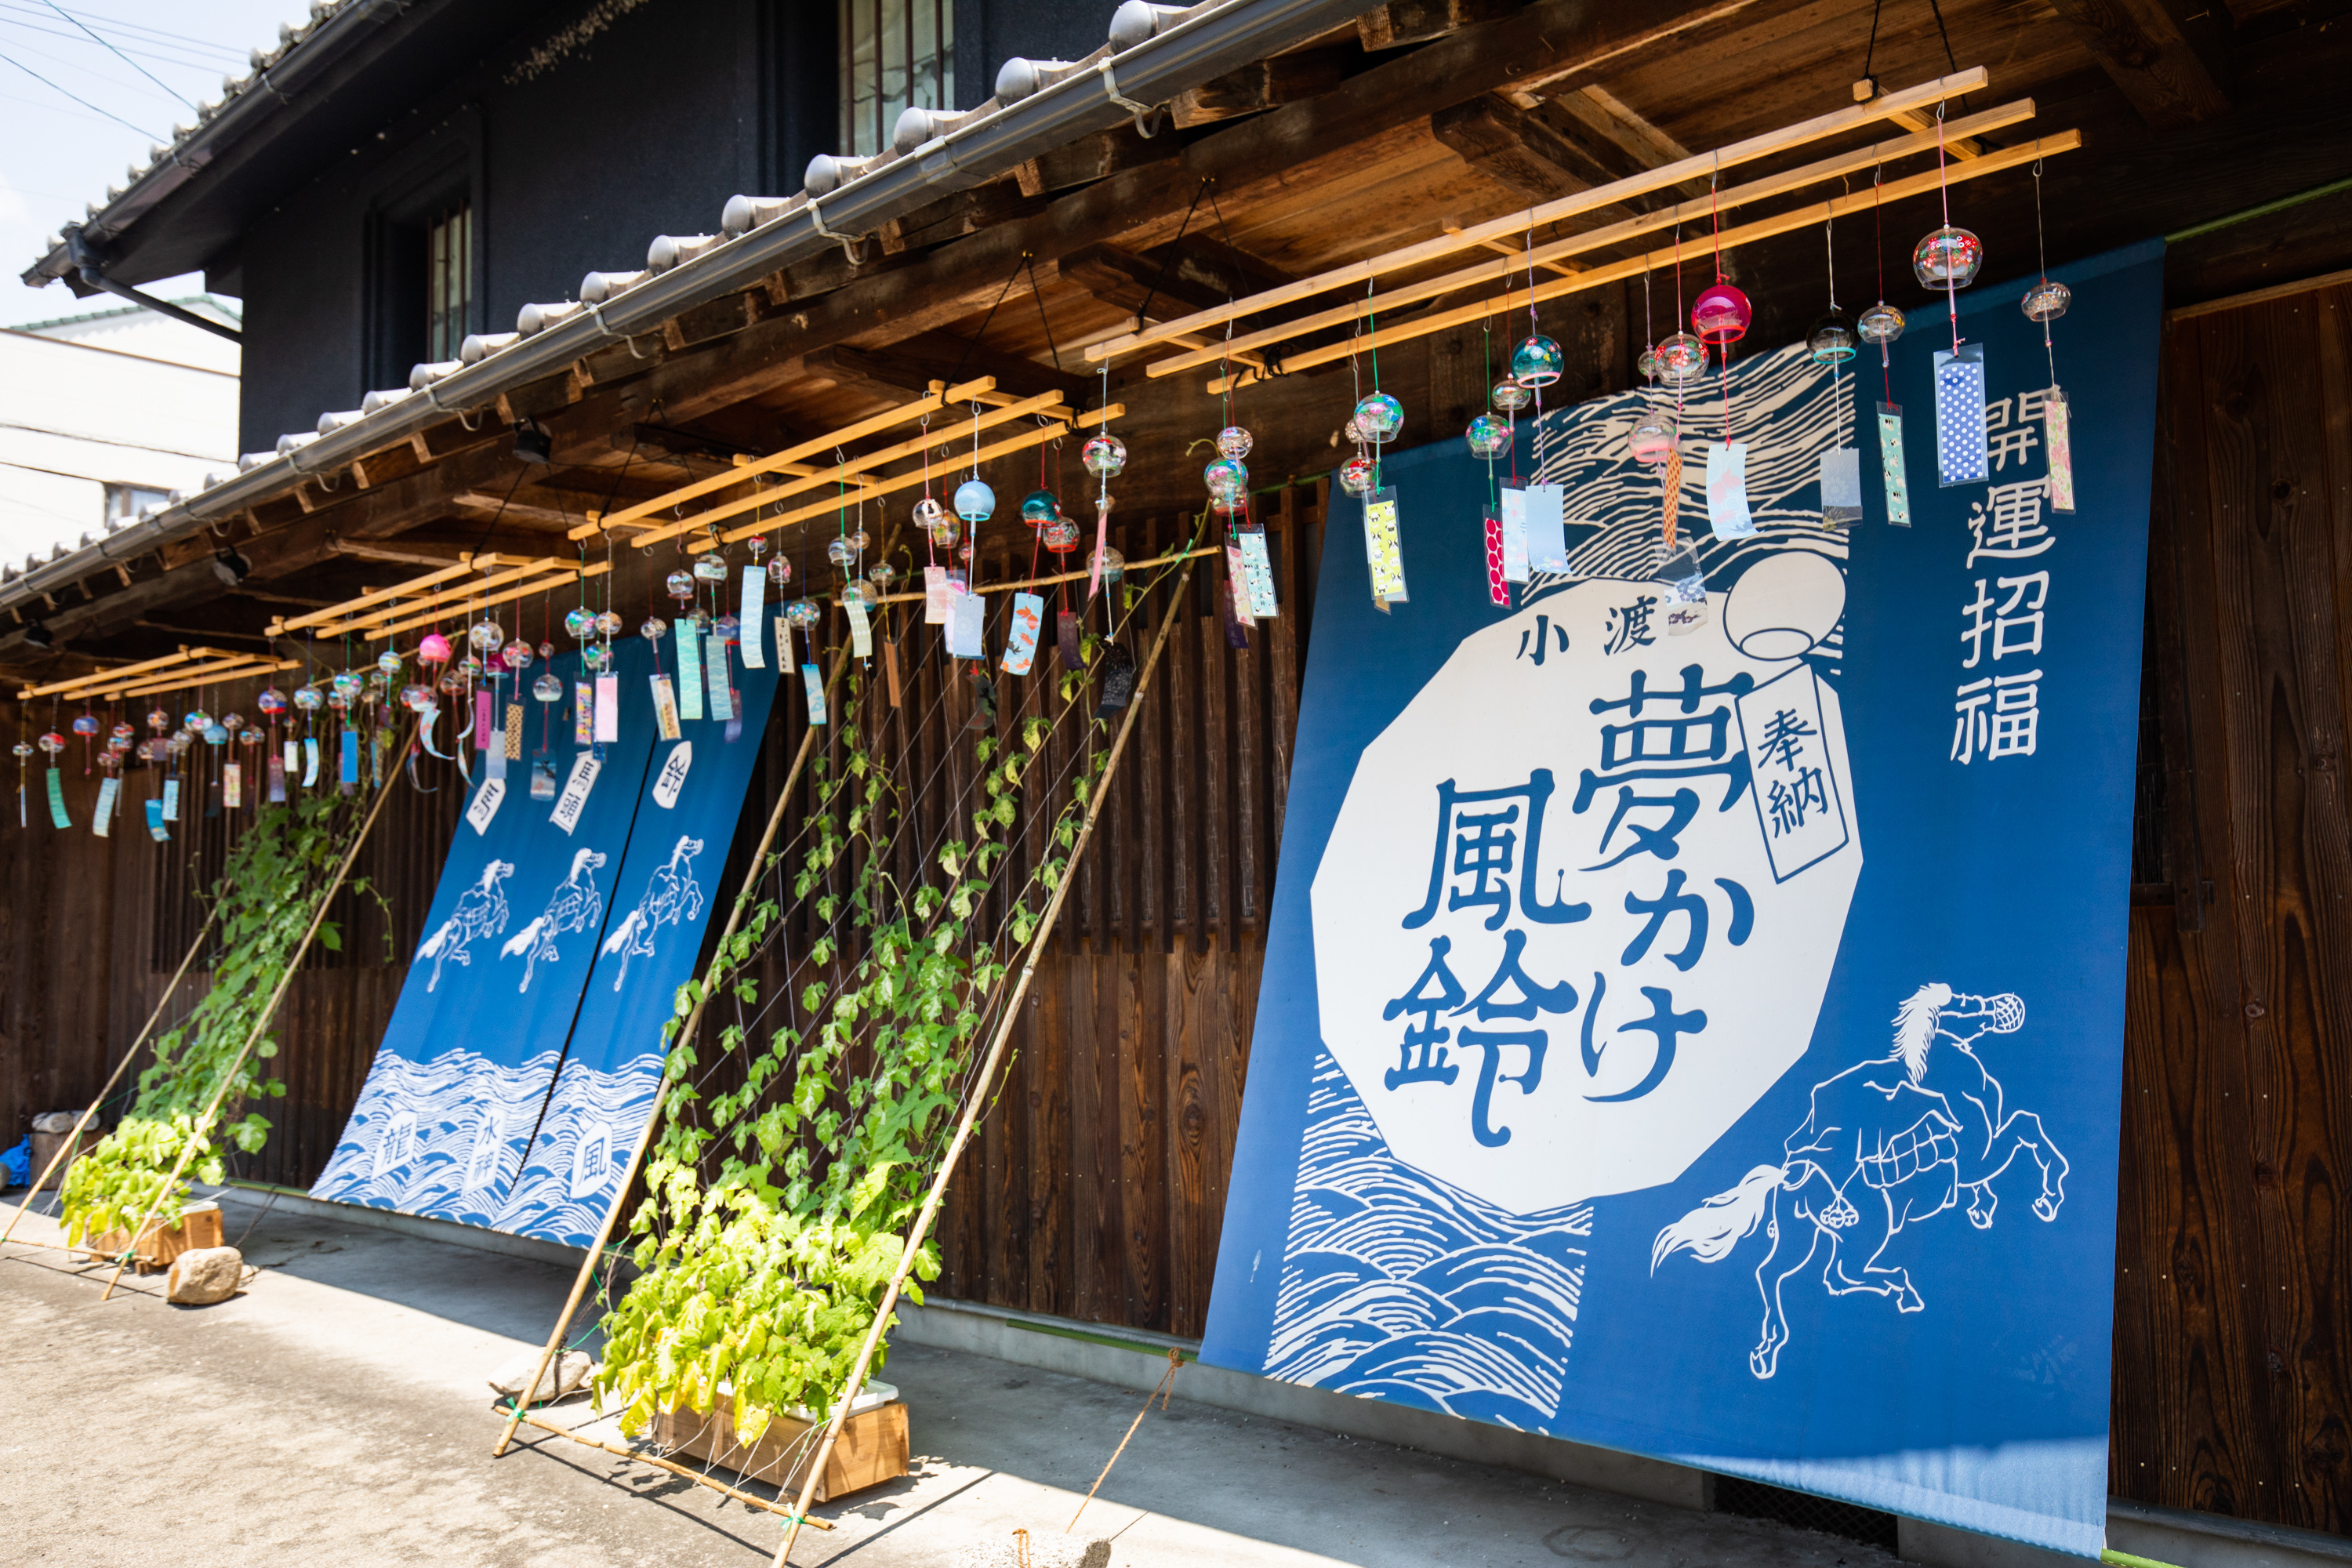 カメラを持って訪れたい！愛知県豊田市にて、約6,000個の風鈴が山里の夏を彩る「小渡夢かけ風鈴」開催｜一般社団法人ツーリズムとよたのプレスリリース